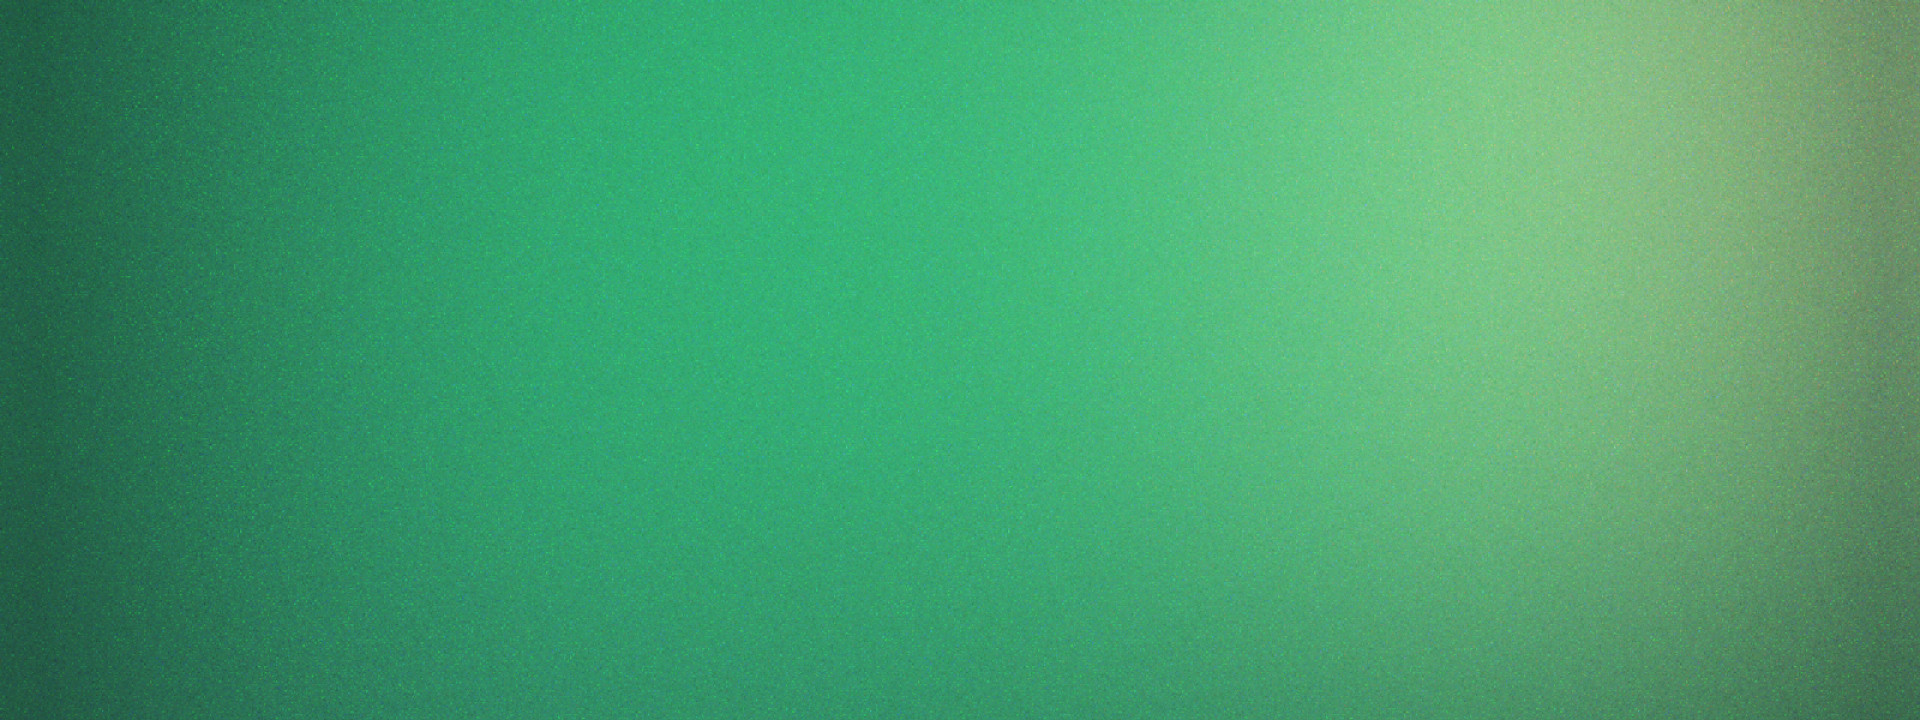 dark green to light green textured gradient background